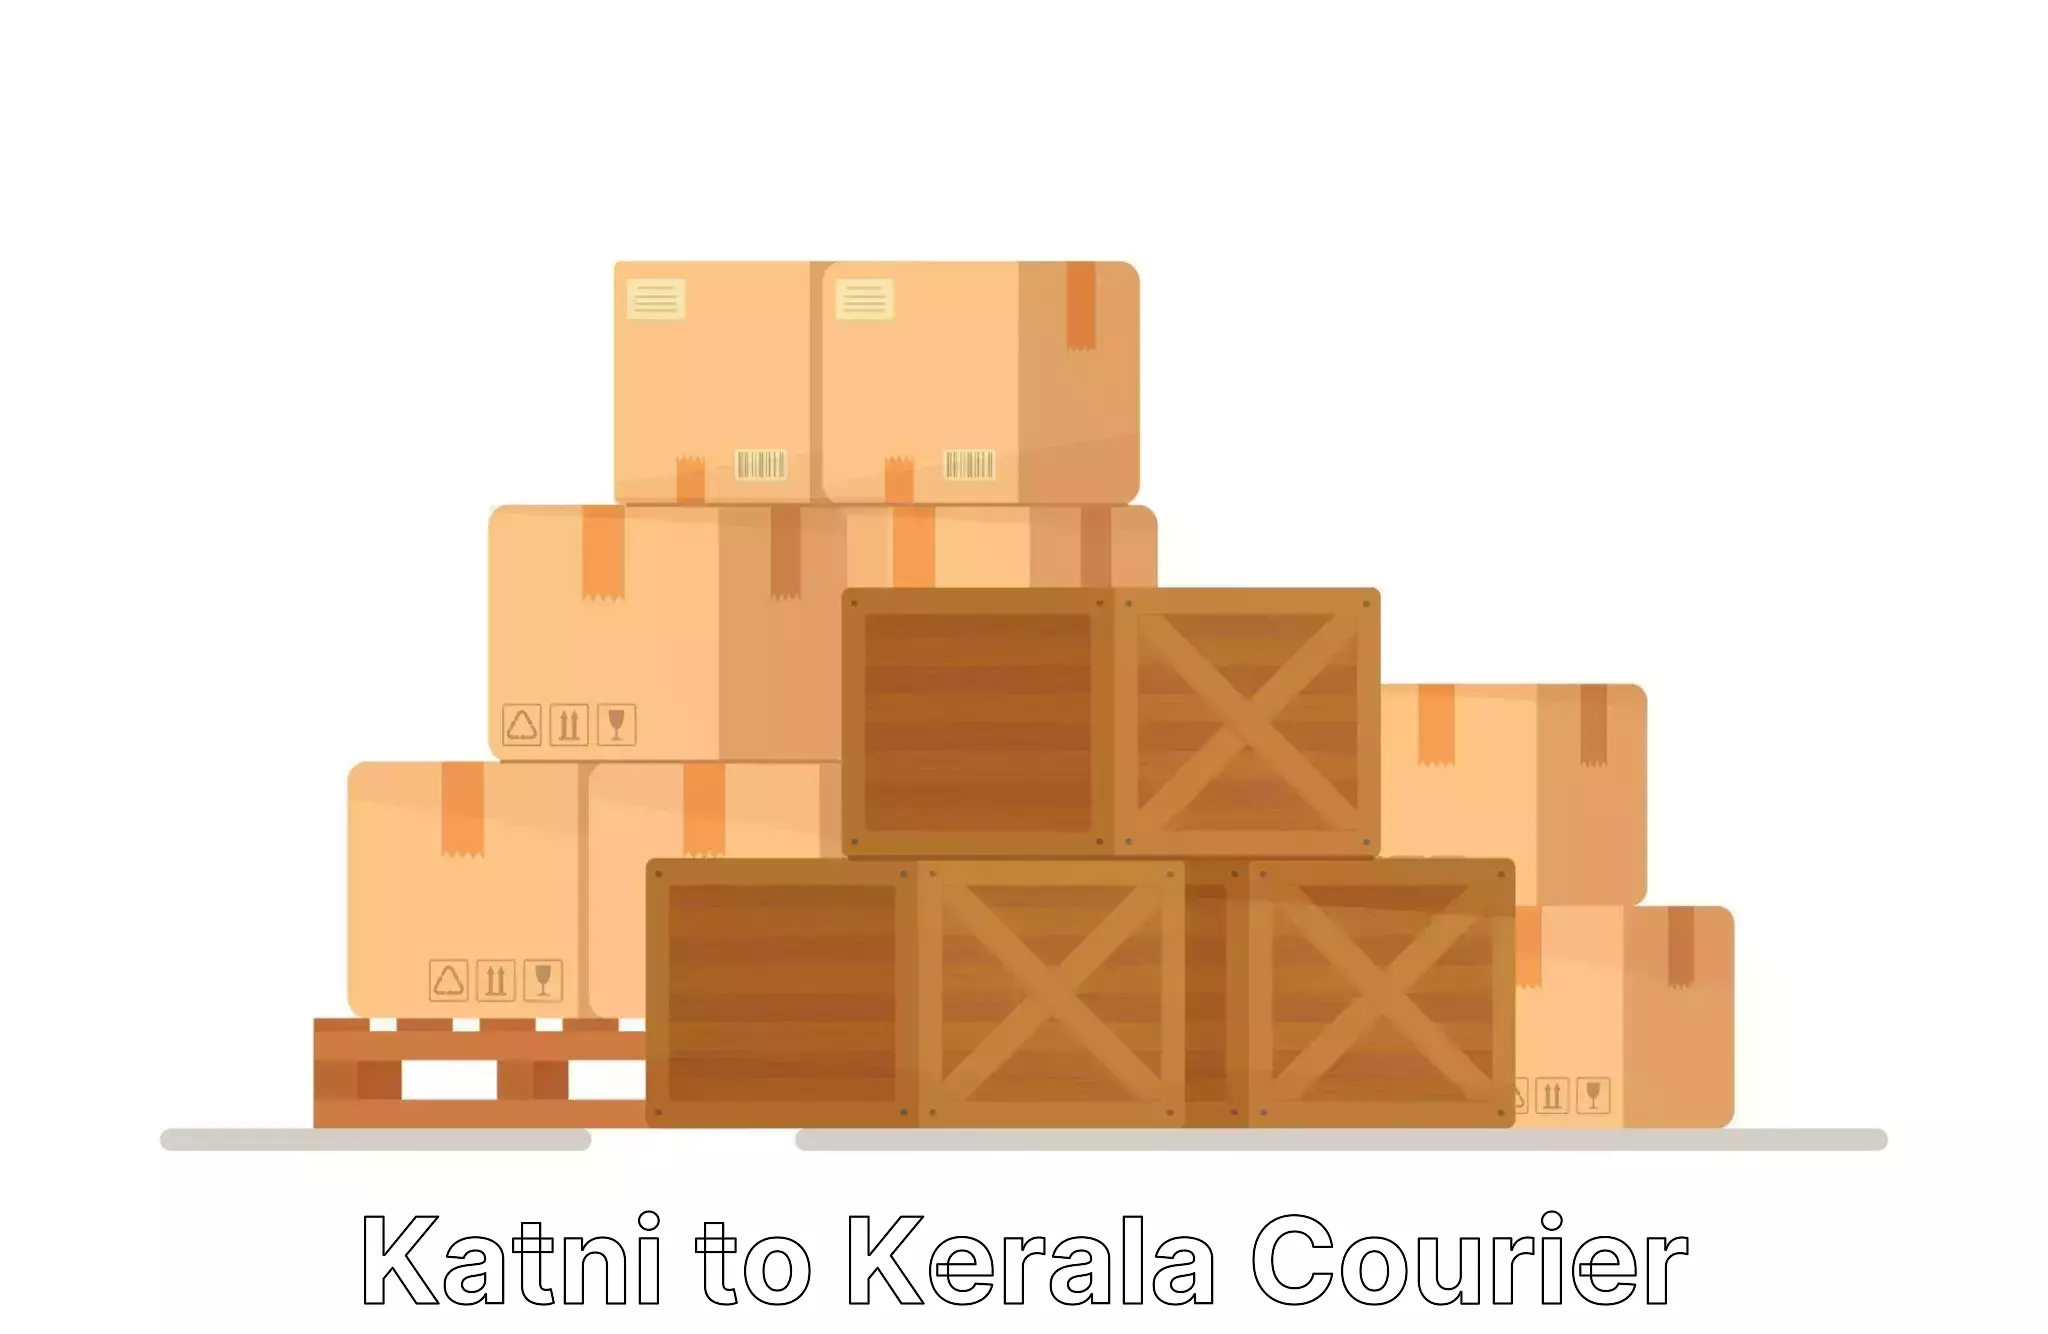 Custom relocation solutions Katni to Thiruvananthapuram